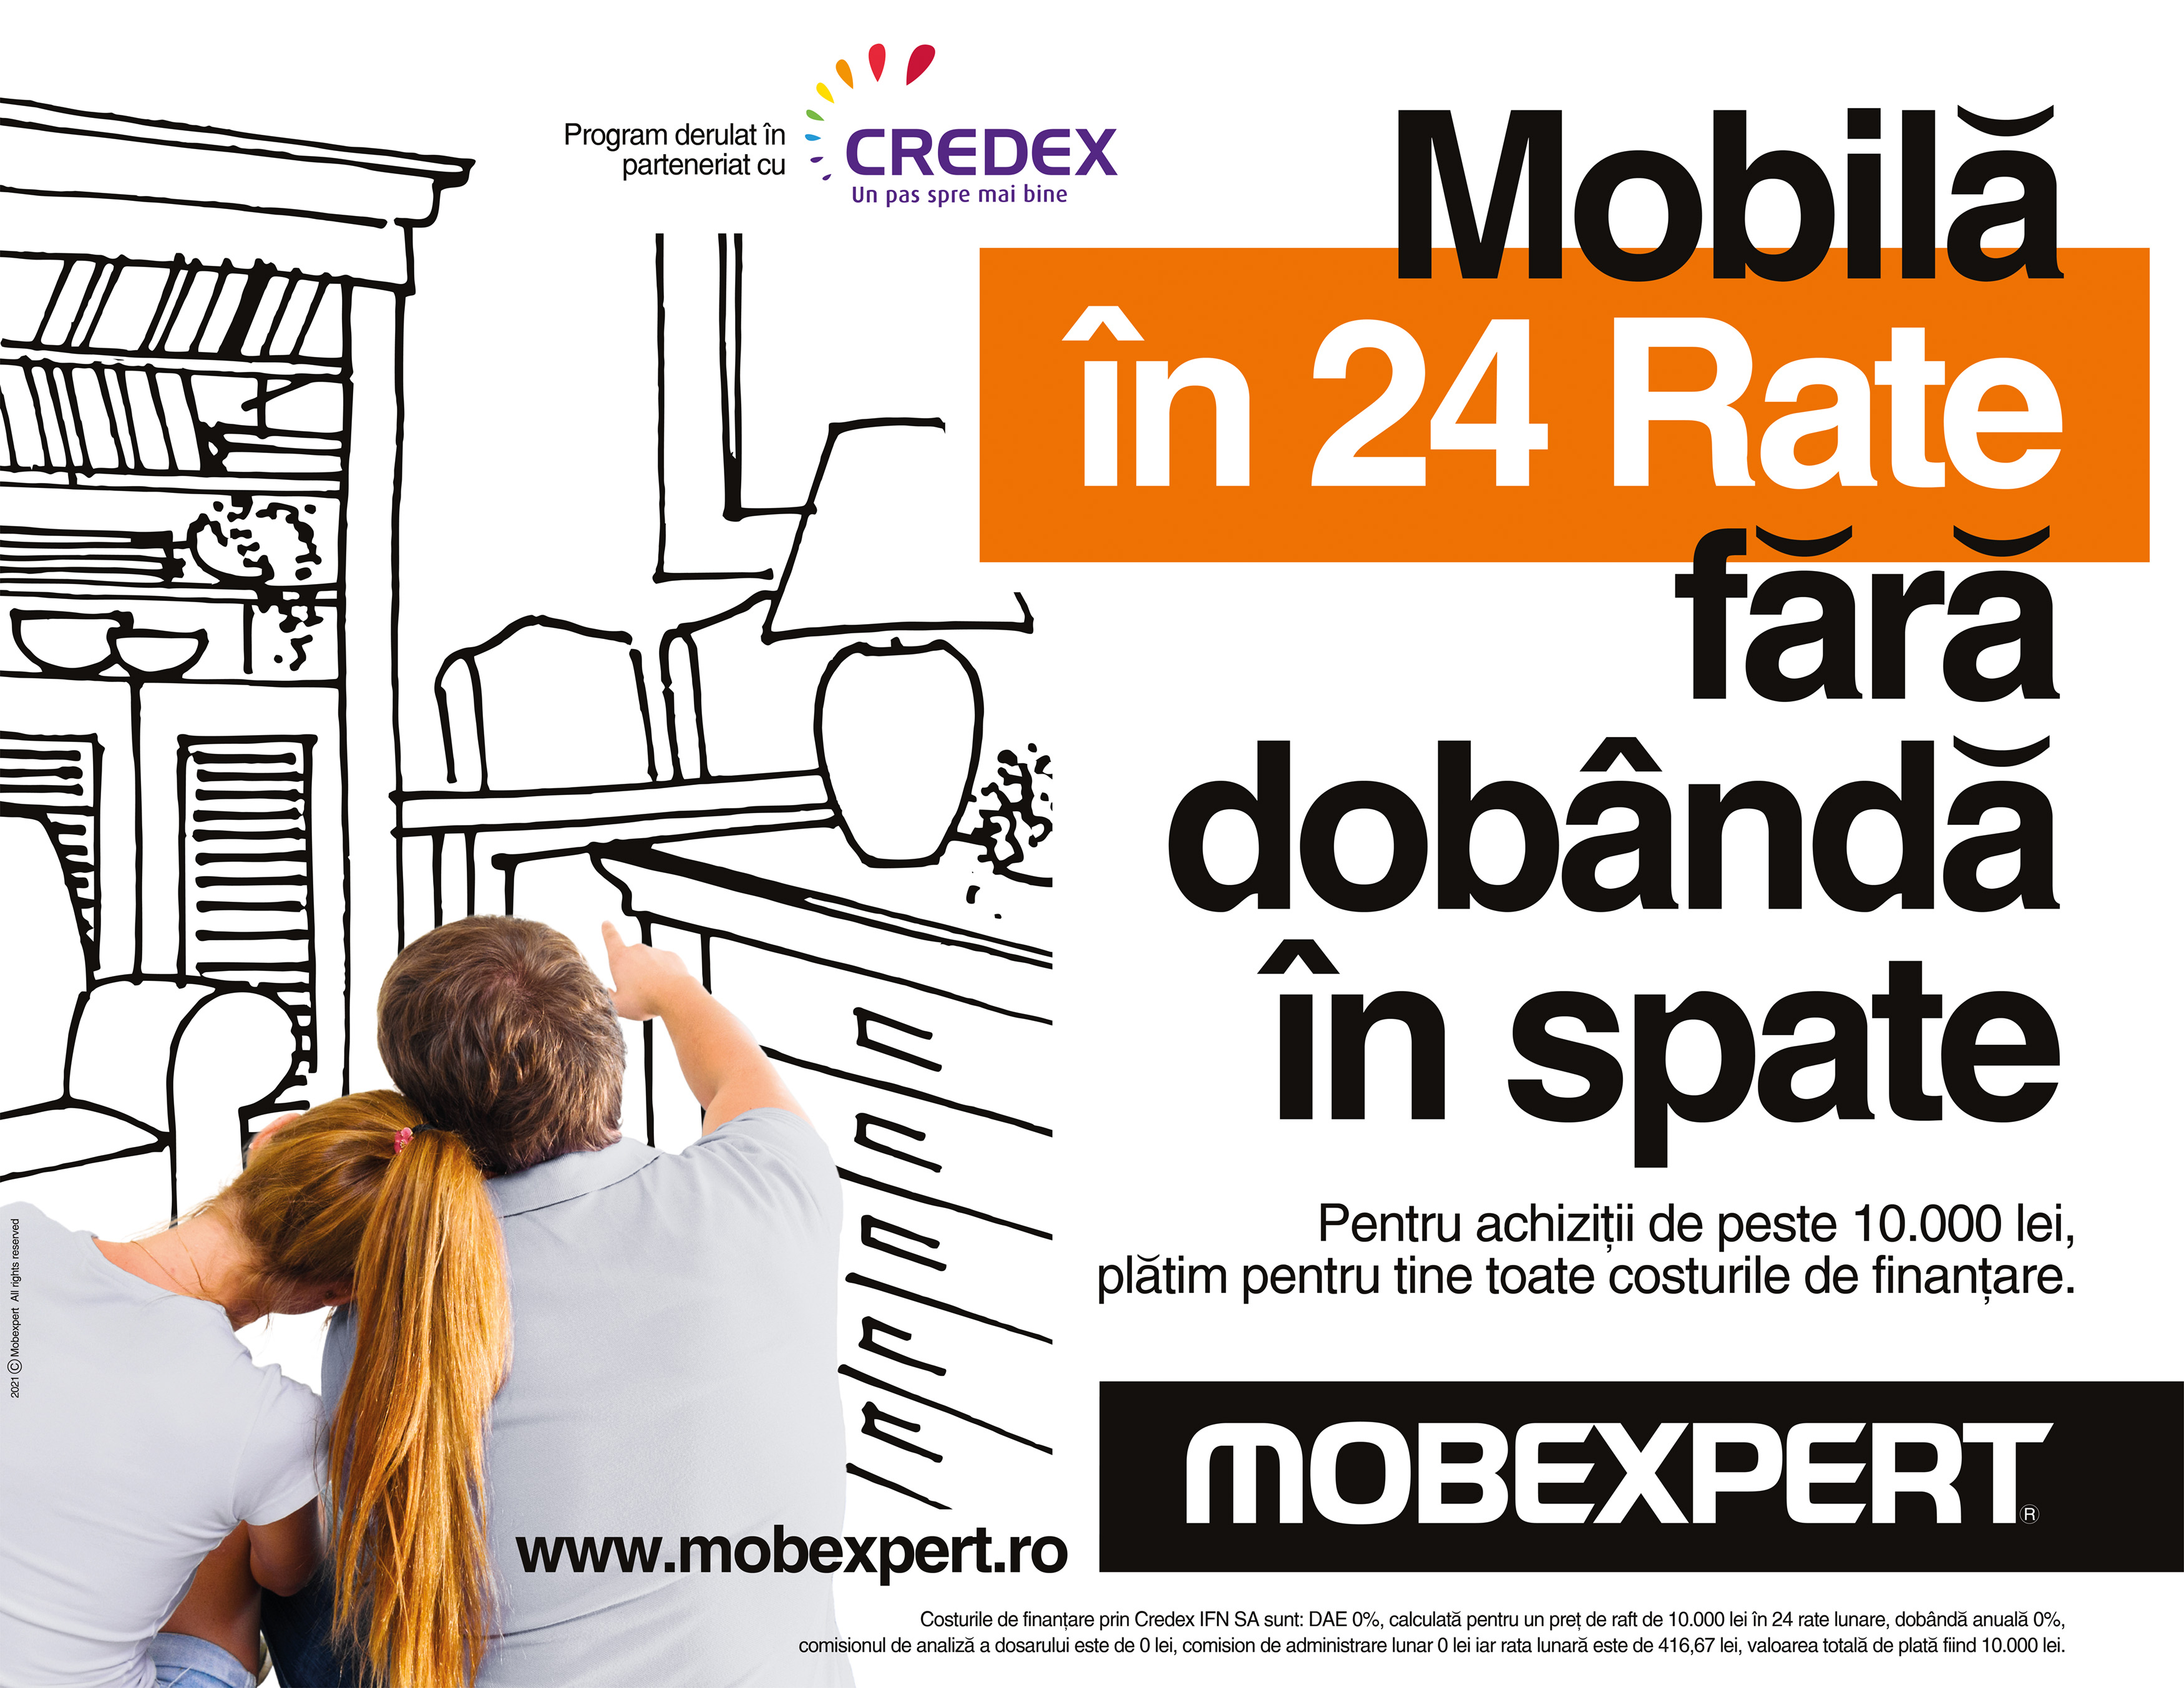 Credex IFN și Mobexpert devin parteneri comerciali în vânzarea de mobilier prin servicii de credit